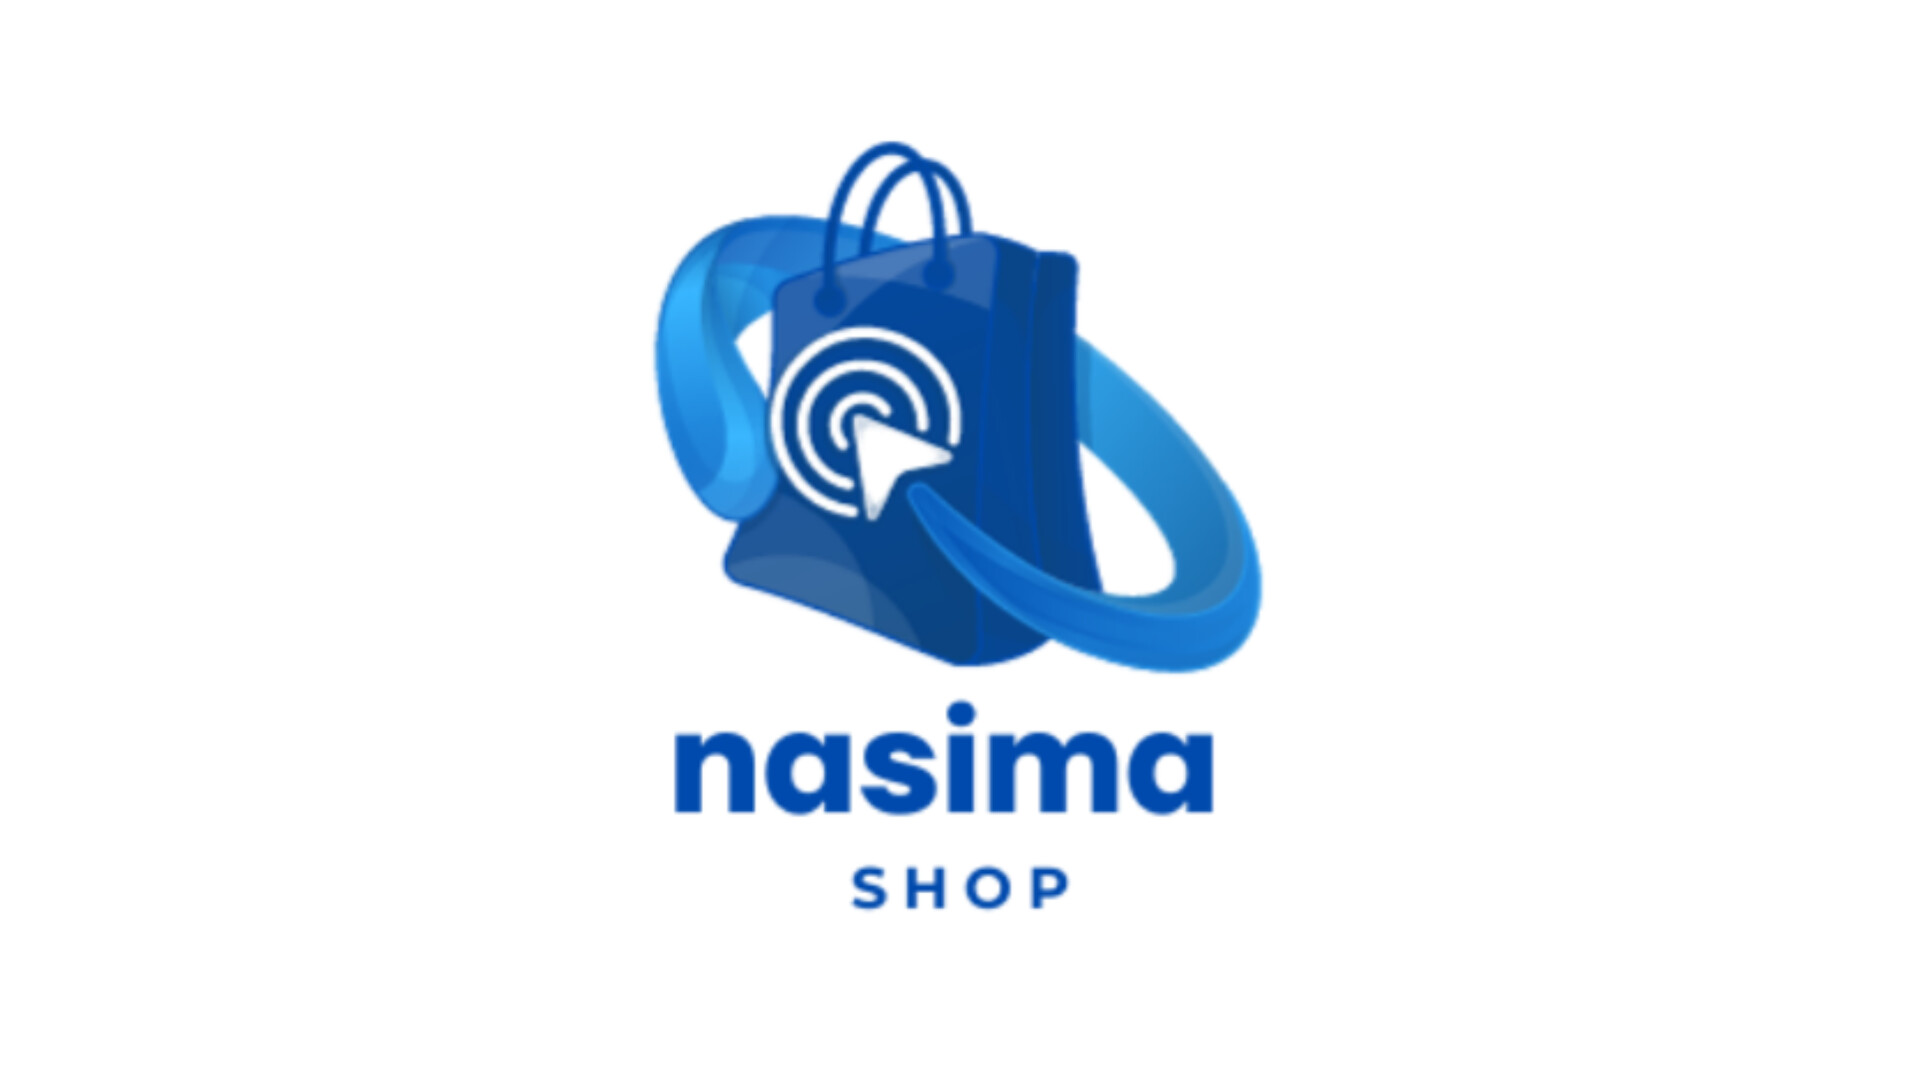 nasima shop